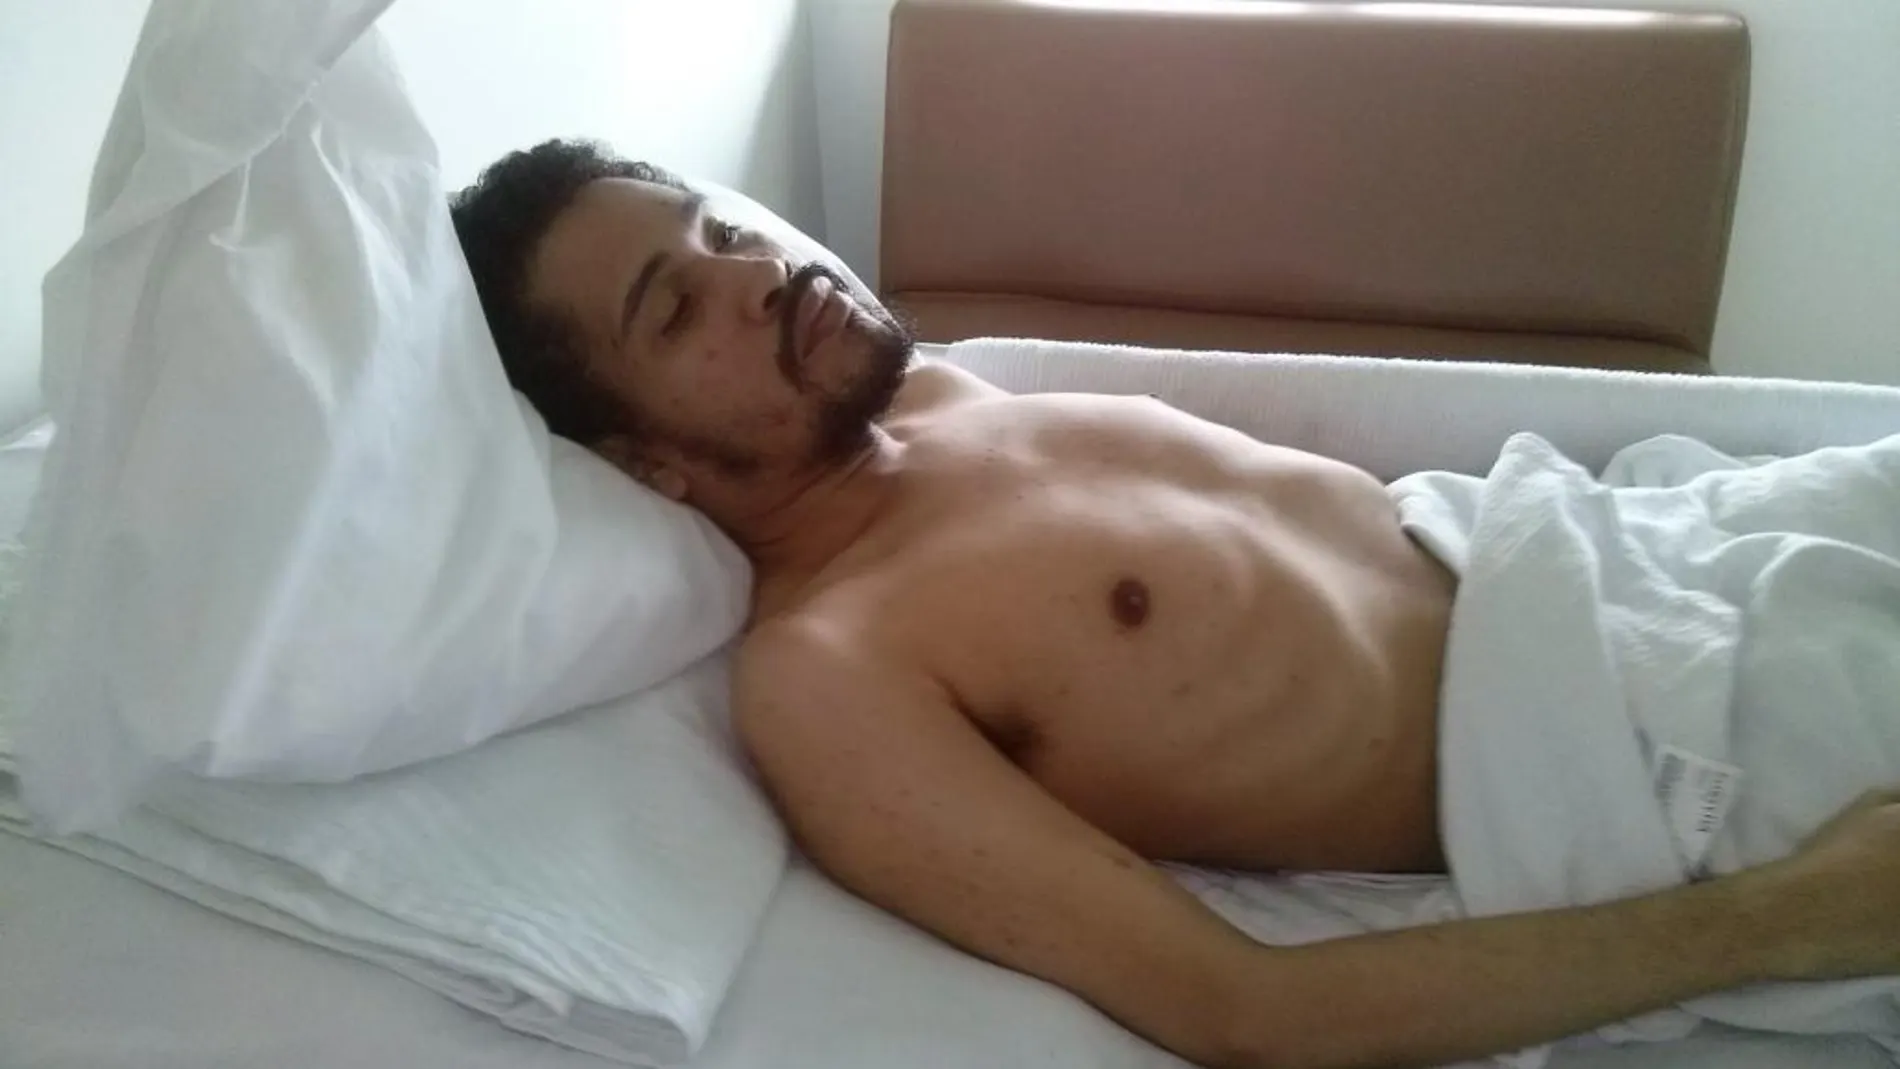 El periodista detenido Leocenis García, editor y dueño del grupo editorial venezolano 6to Poder, en huelga de hambre en el Hospital Militar de Caracas (Venezuela).